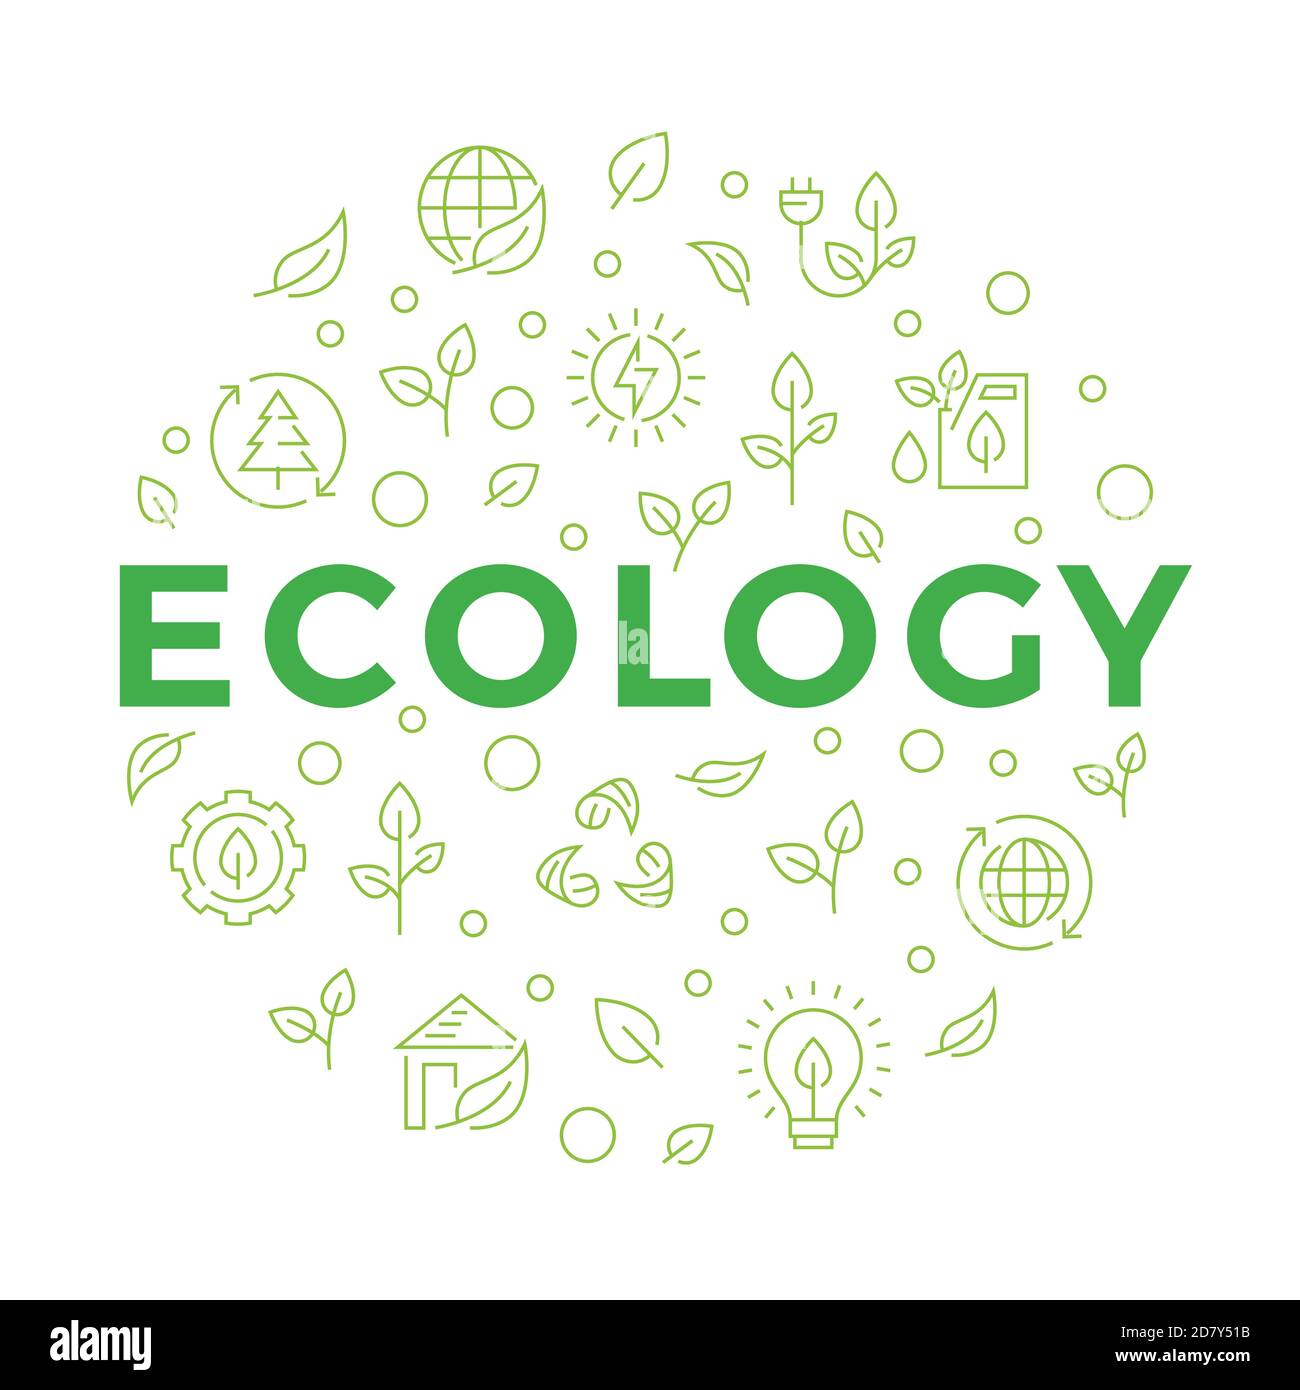 Ökologie Konzept Banner mit Linien-Icons. Modernes geometrisches Design. Vektorgrafik. Stock Vektor